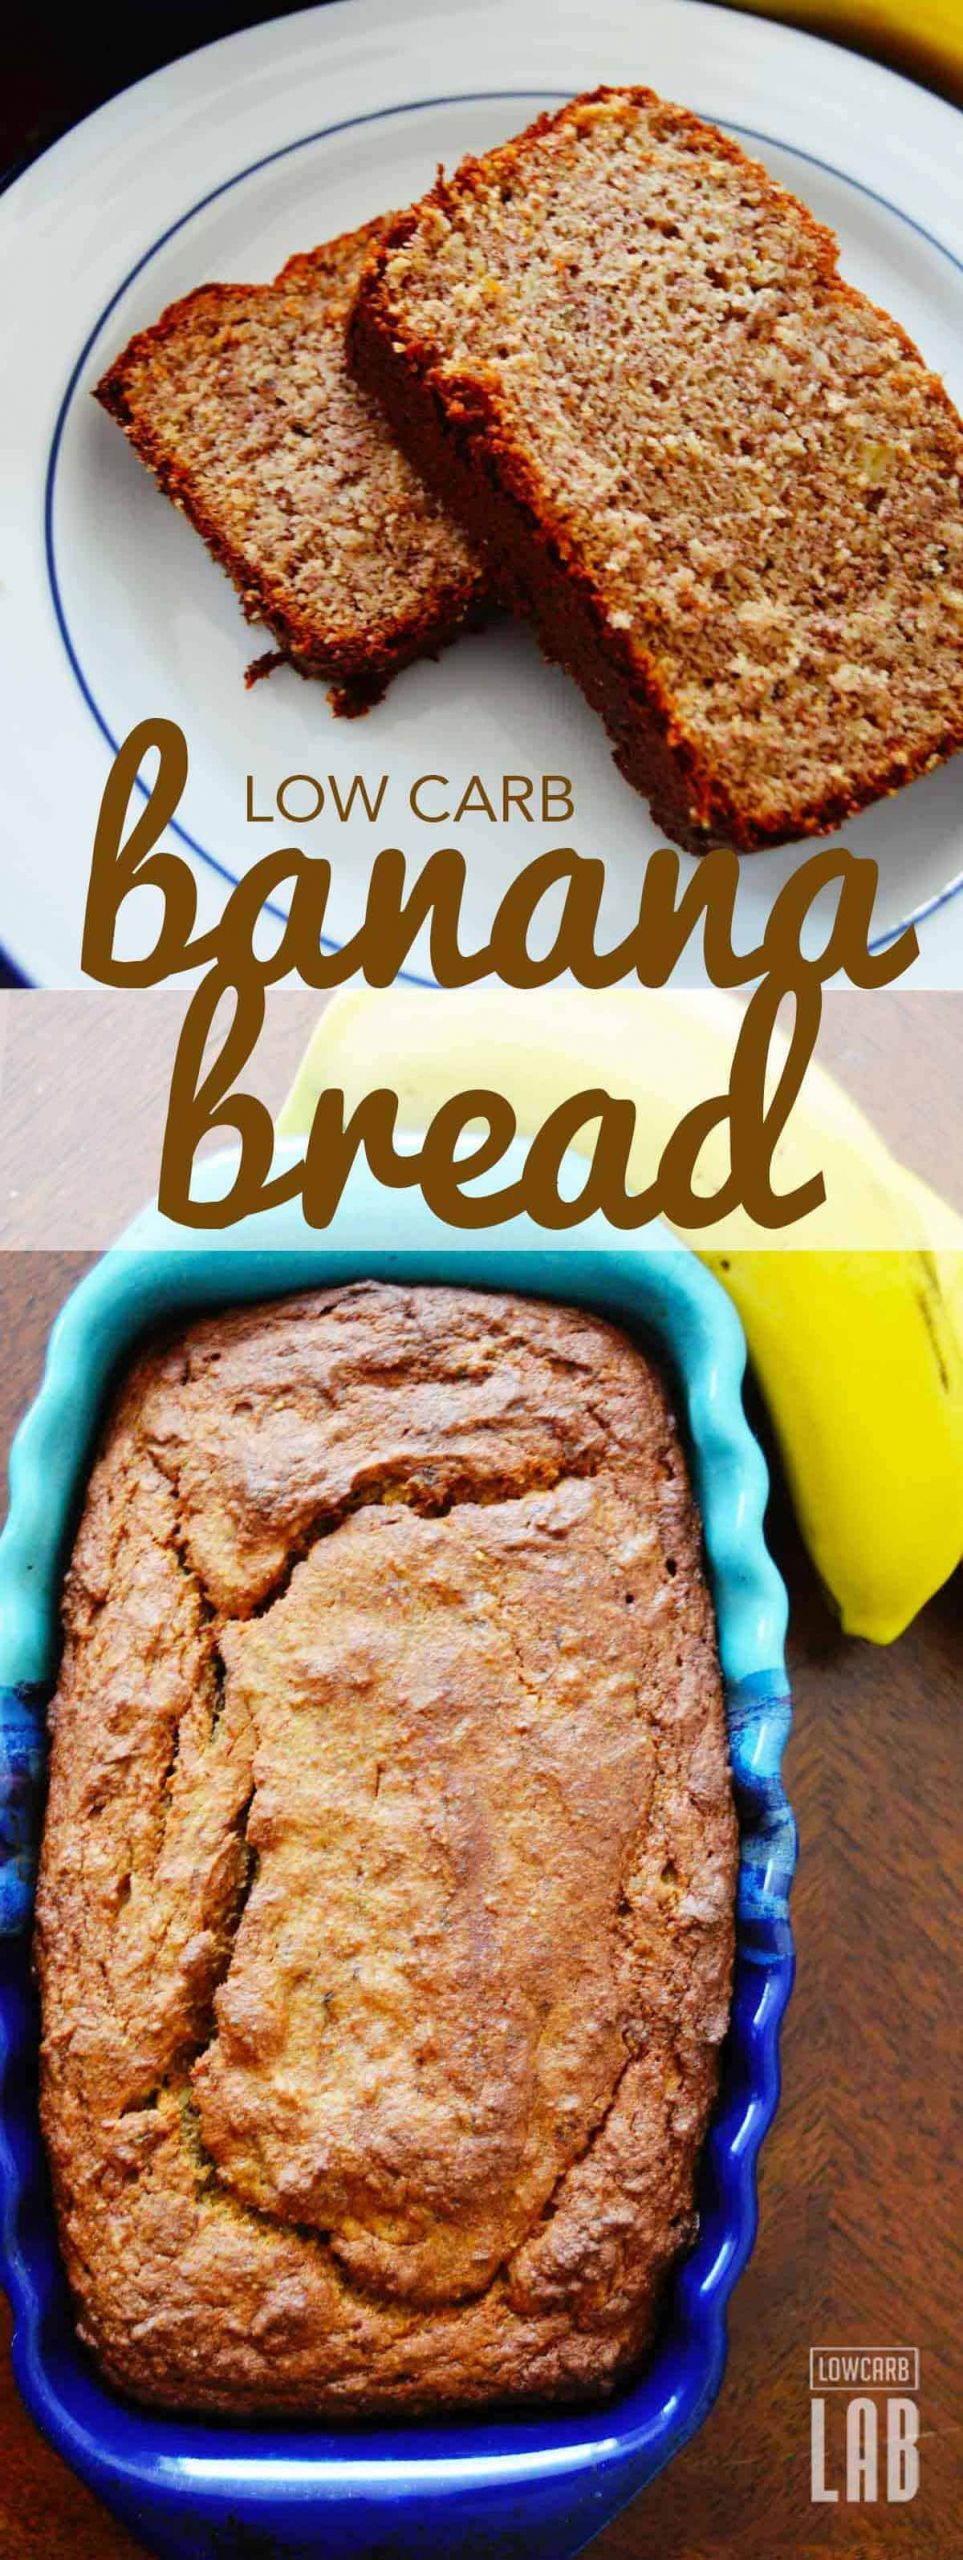 Low Carb Banana Bread Recipe
 Delicious Low Carb Banana Bread Recipe